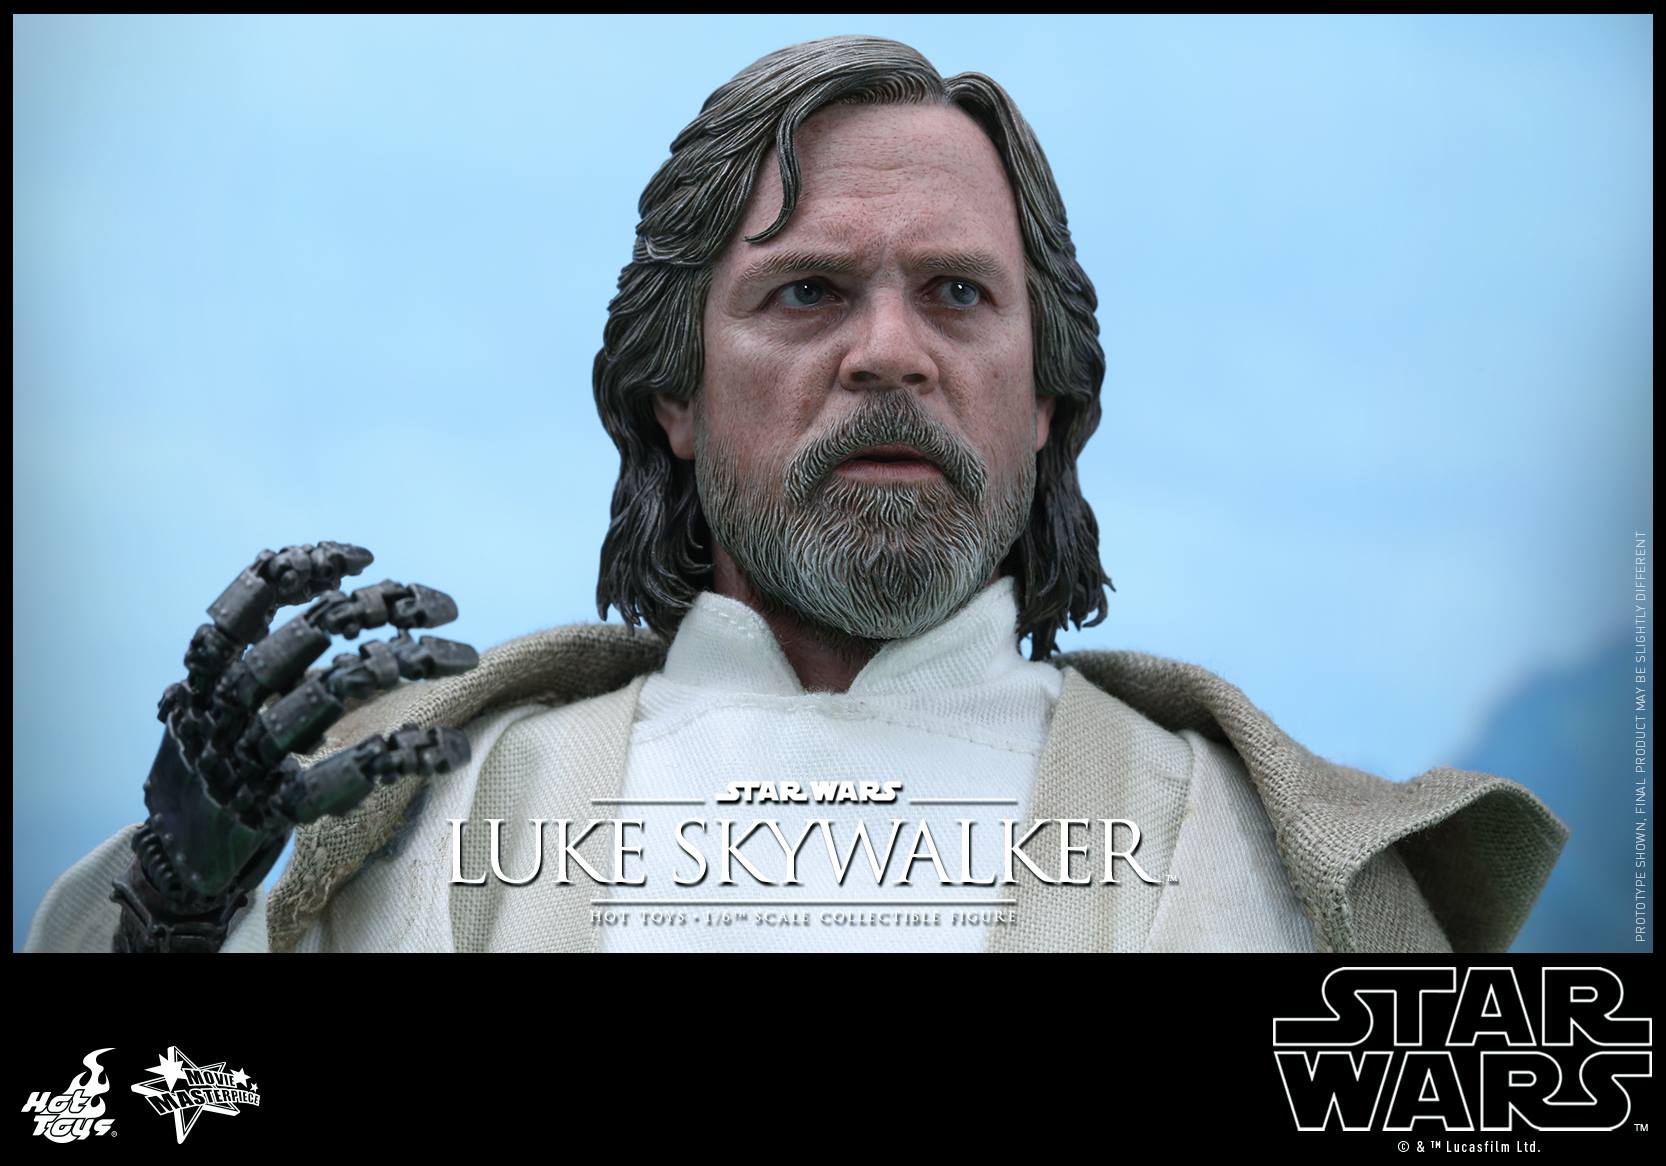 swfahtluke3 Luke Skywalker Star Wars: The Force Awakens Hot Toys Action Figure Revealed